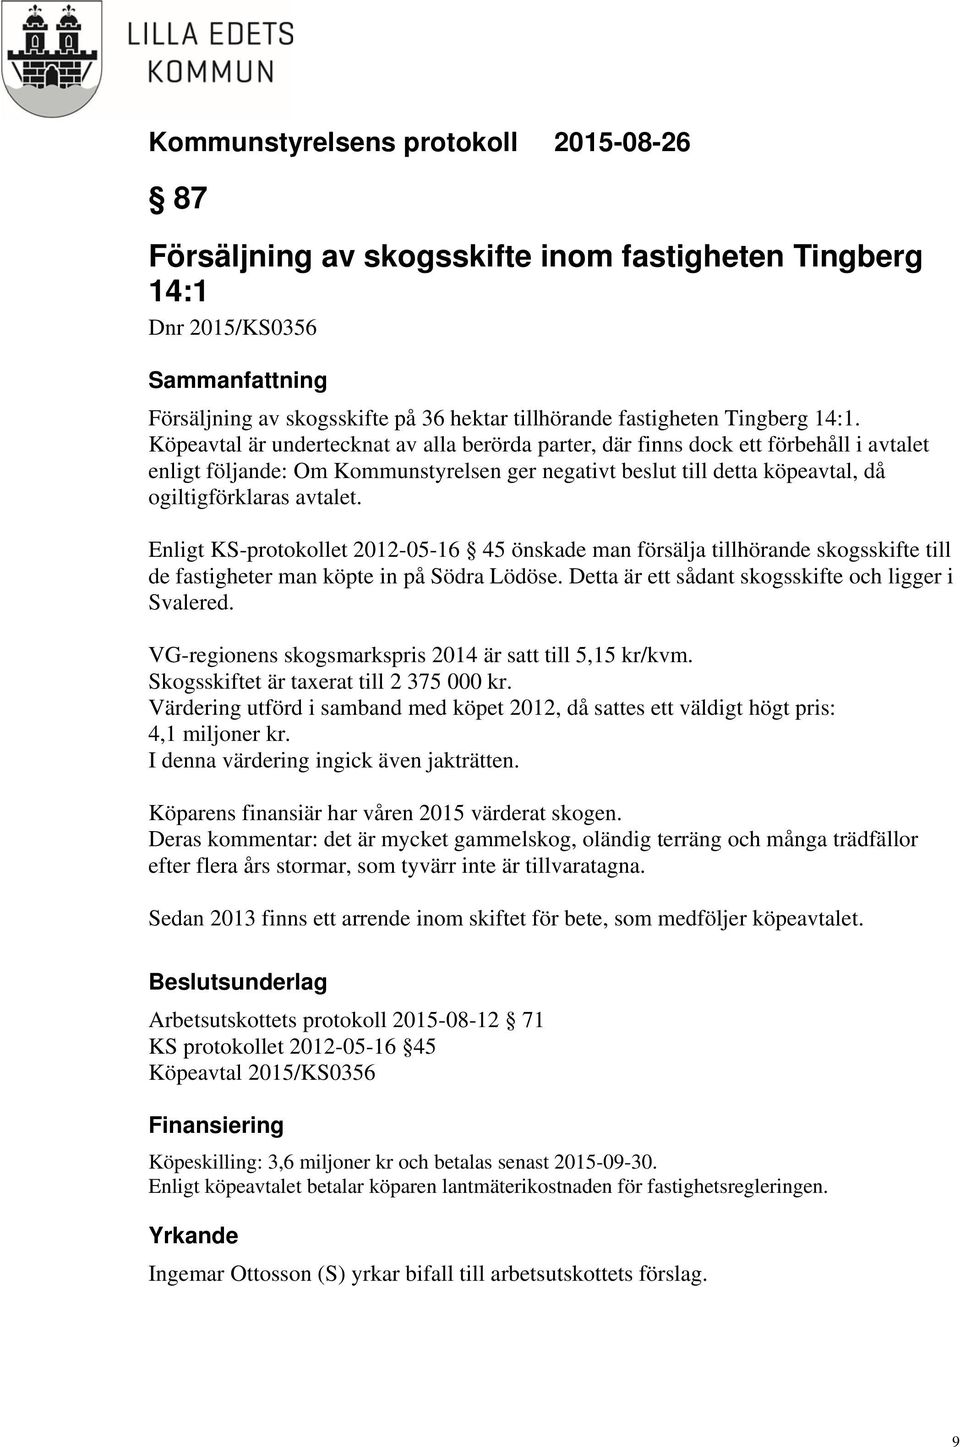 Enligt KS-protokollet 2012-05-16 45 önskade man försälja tillhörande skogsskifte till de fastigheter man köpte in på Södra Lödöse. Detta är ett sådant skogsskifte och ligger i Svalered.